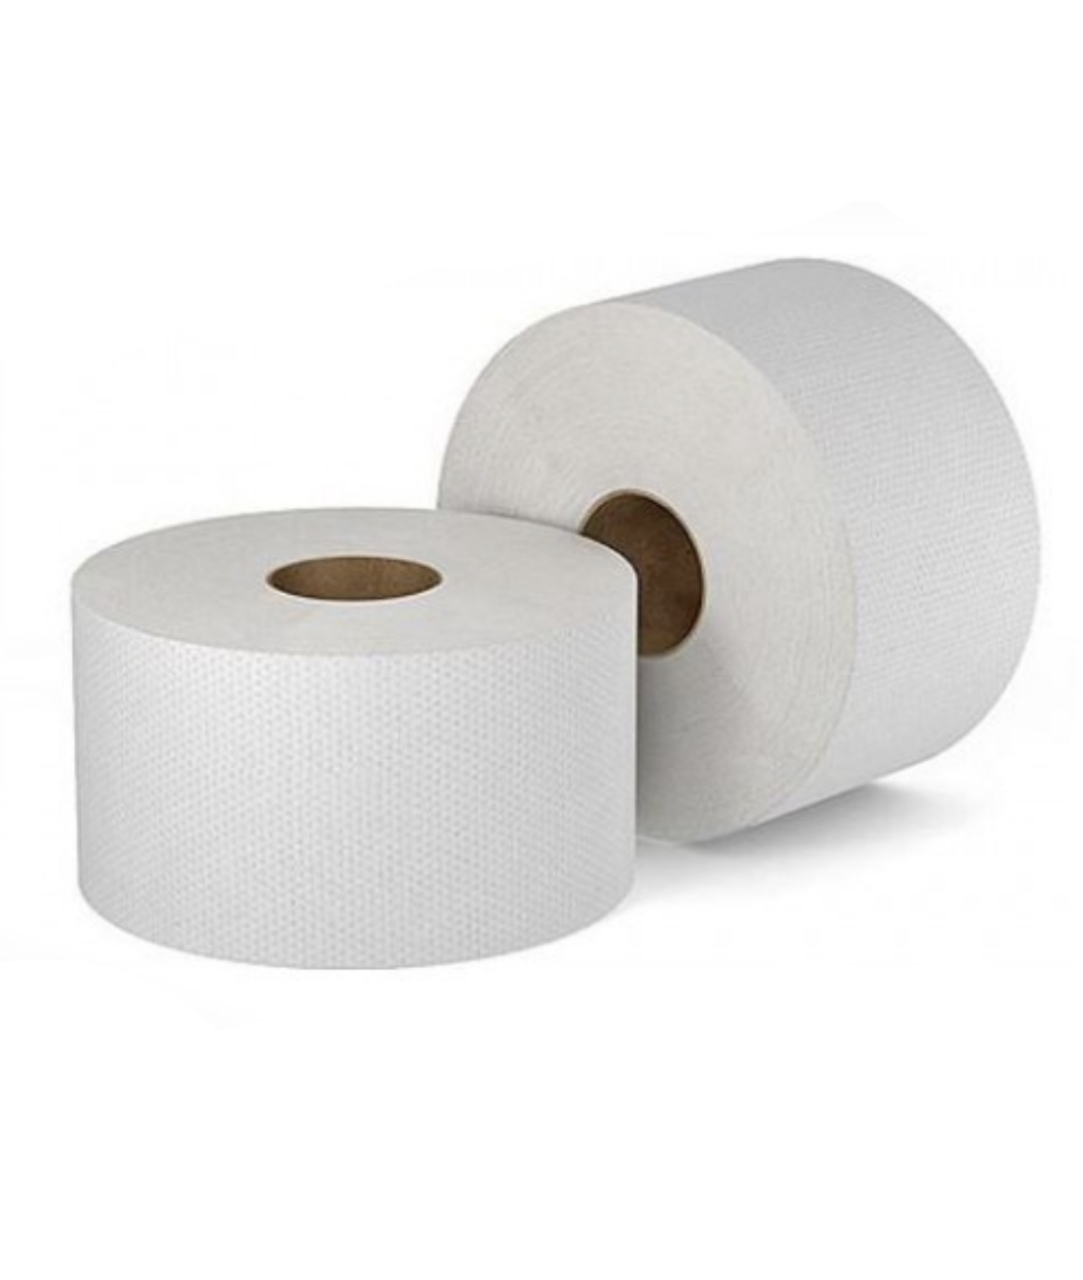 Туалетная бумага Профгигиена Comfort, двухслойная белая .арт. 204 туалетная бумага zewa плюс белая 2 слоя 12шт